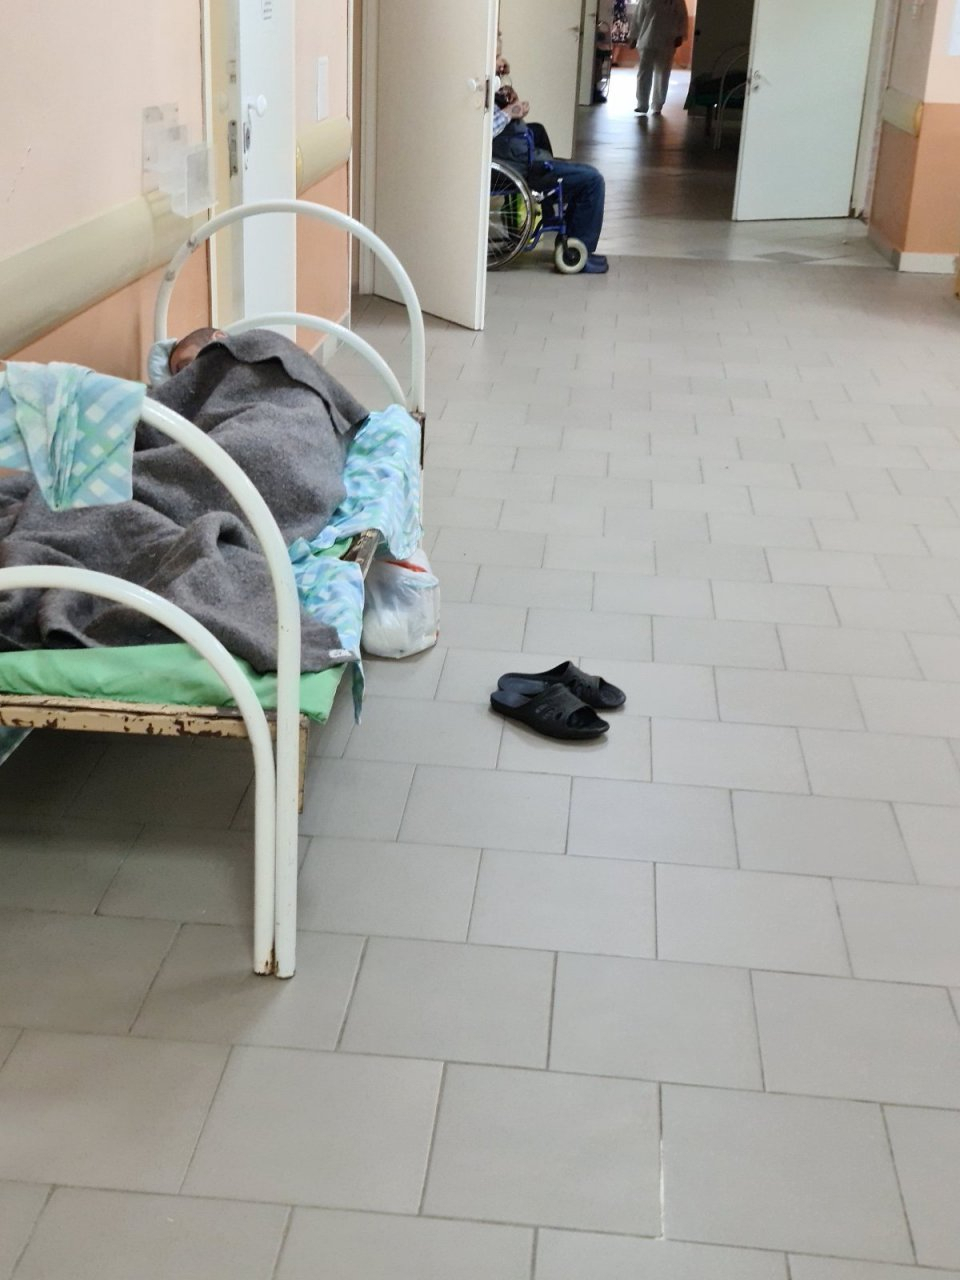 Антисанитария, хаос и койки в коридорах: насколько плохо сейчас обстоят дела в эжвинской больнице (фото)